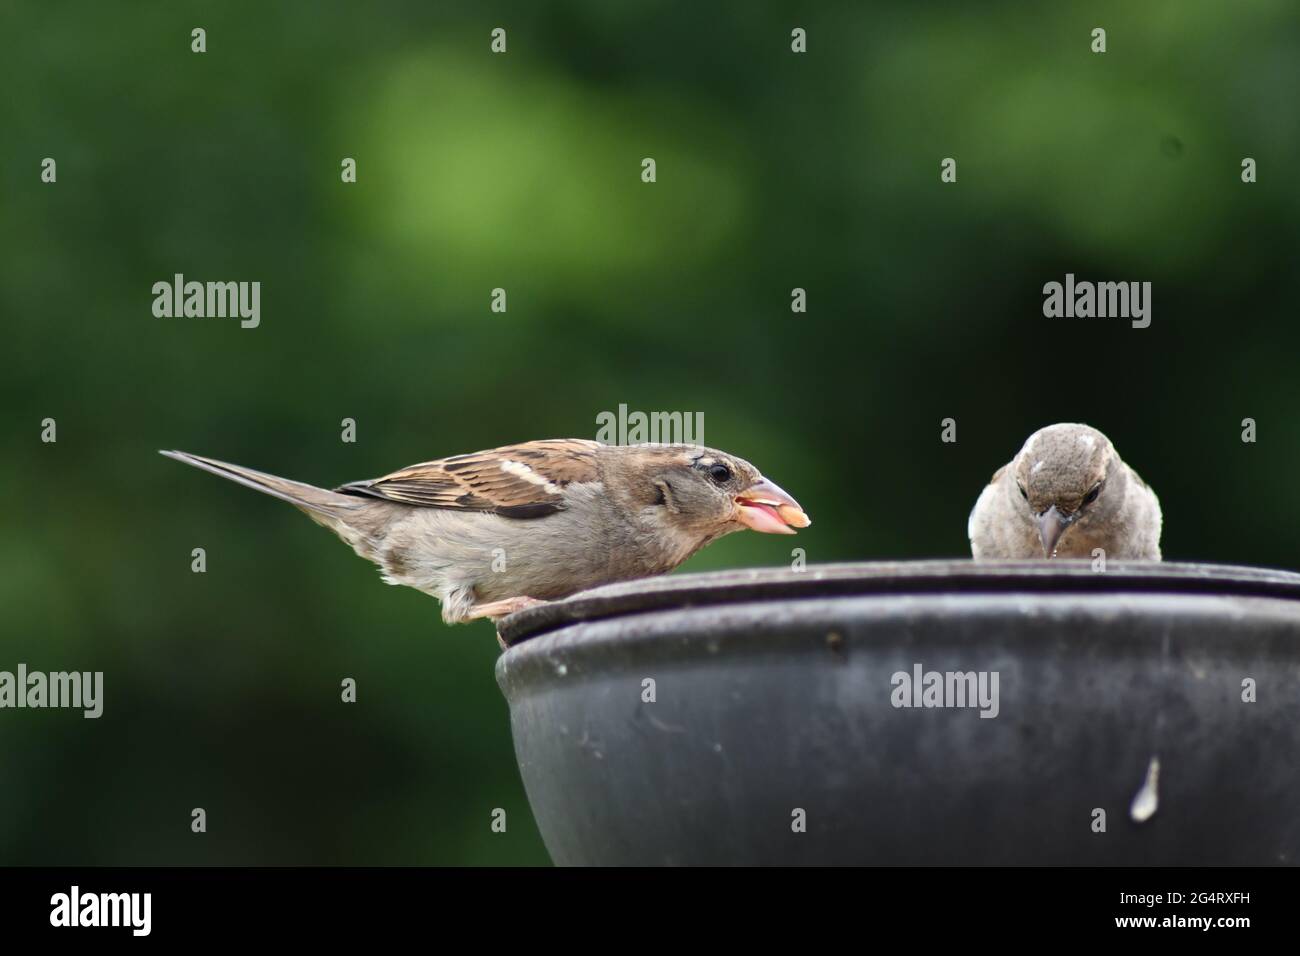 un passero maschio catturò mangiando un dado, con dettagli che mostrano la sua lingua mentre un passero femmina sta mangiando il seme accanto a lui Foto Stock